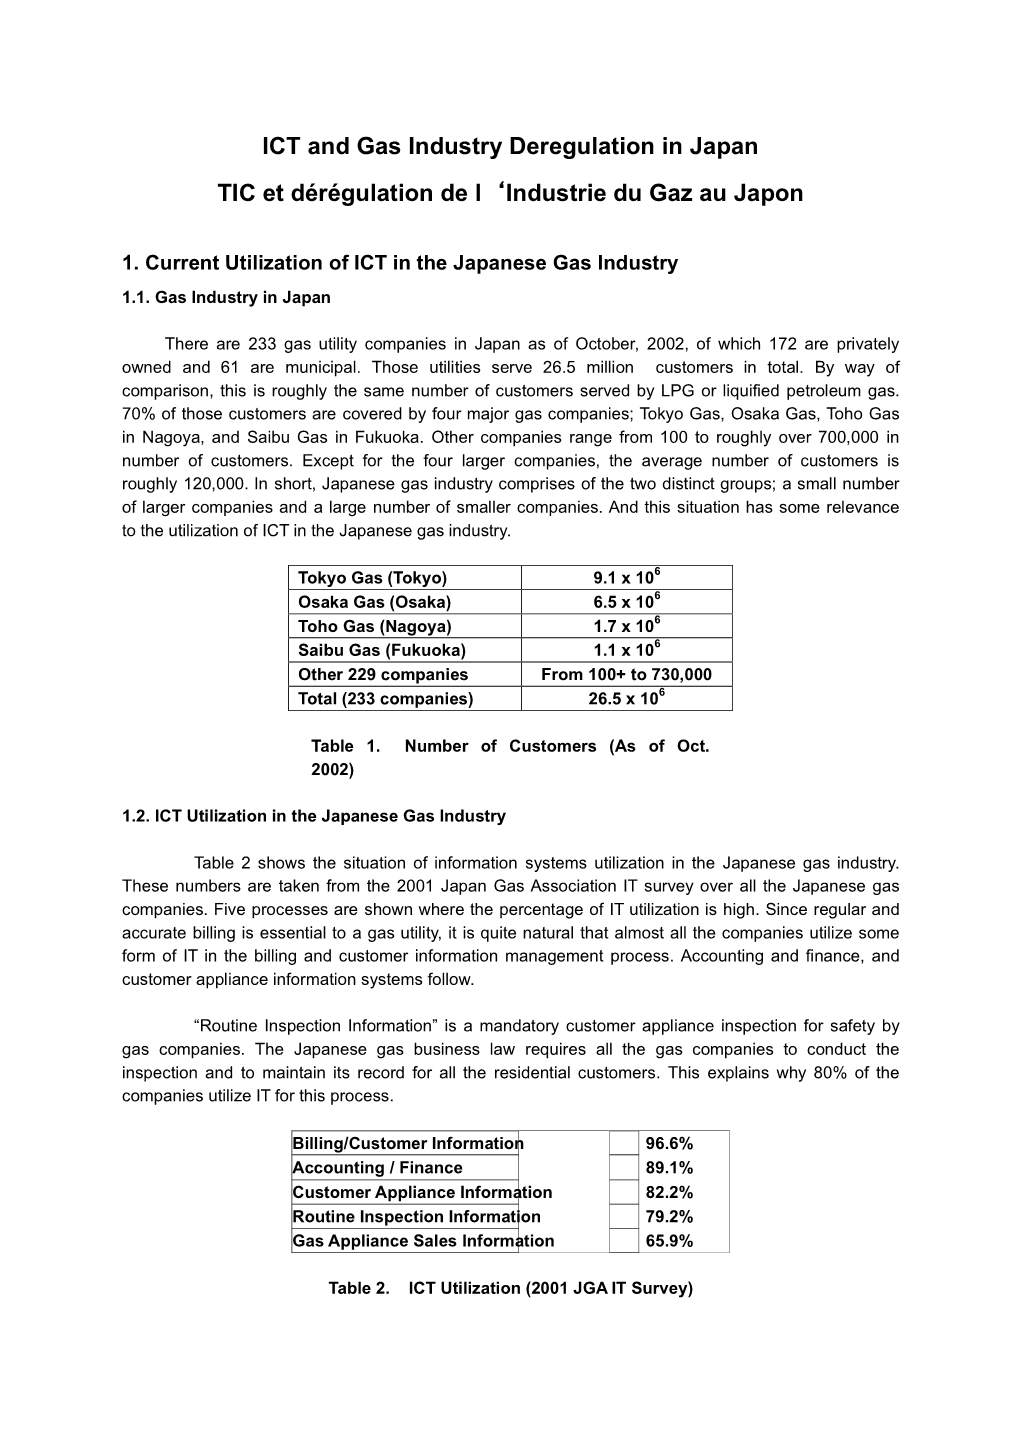 ICT and Gas Industry Deregulation in Japan TIC Et Dérégulation De L'industrie Du Gaz Au Japon